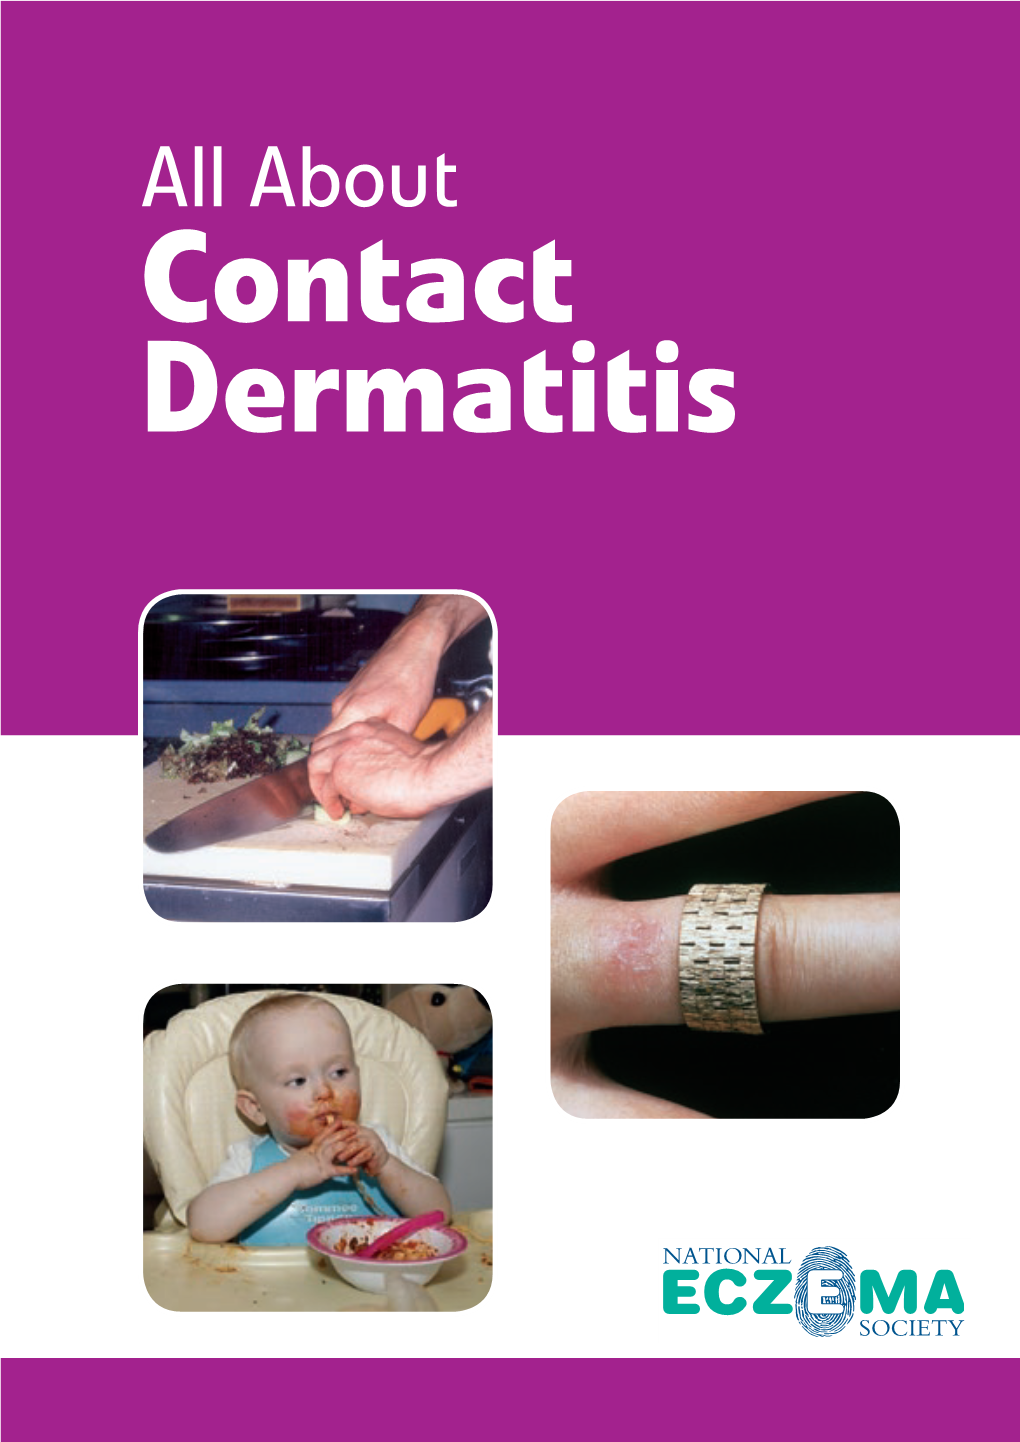 Contact Dermatitis/Eczema